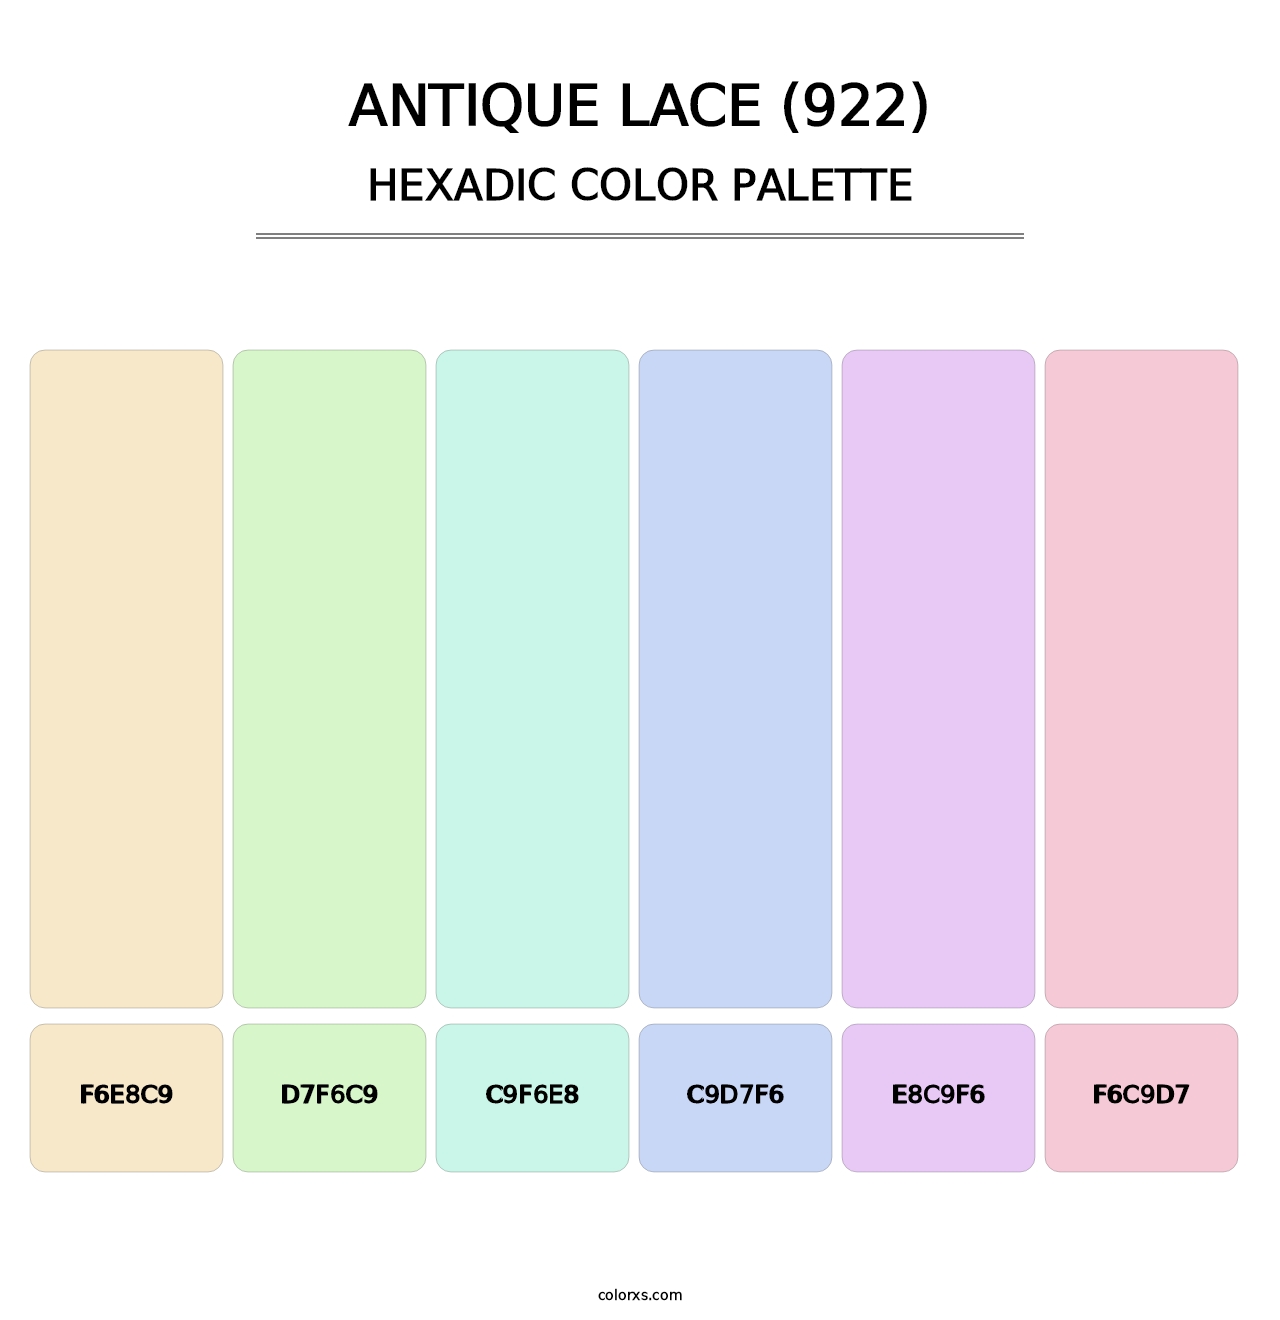 Antique Lace (922) - Hexadic Color Palette